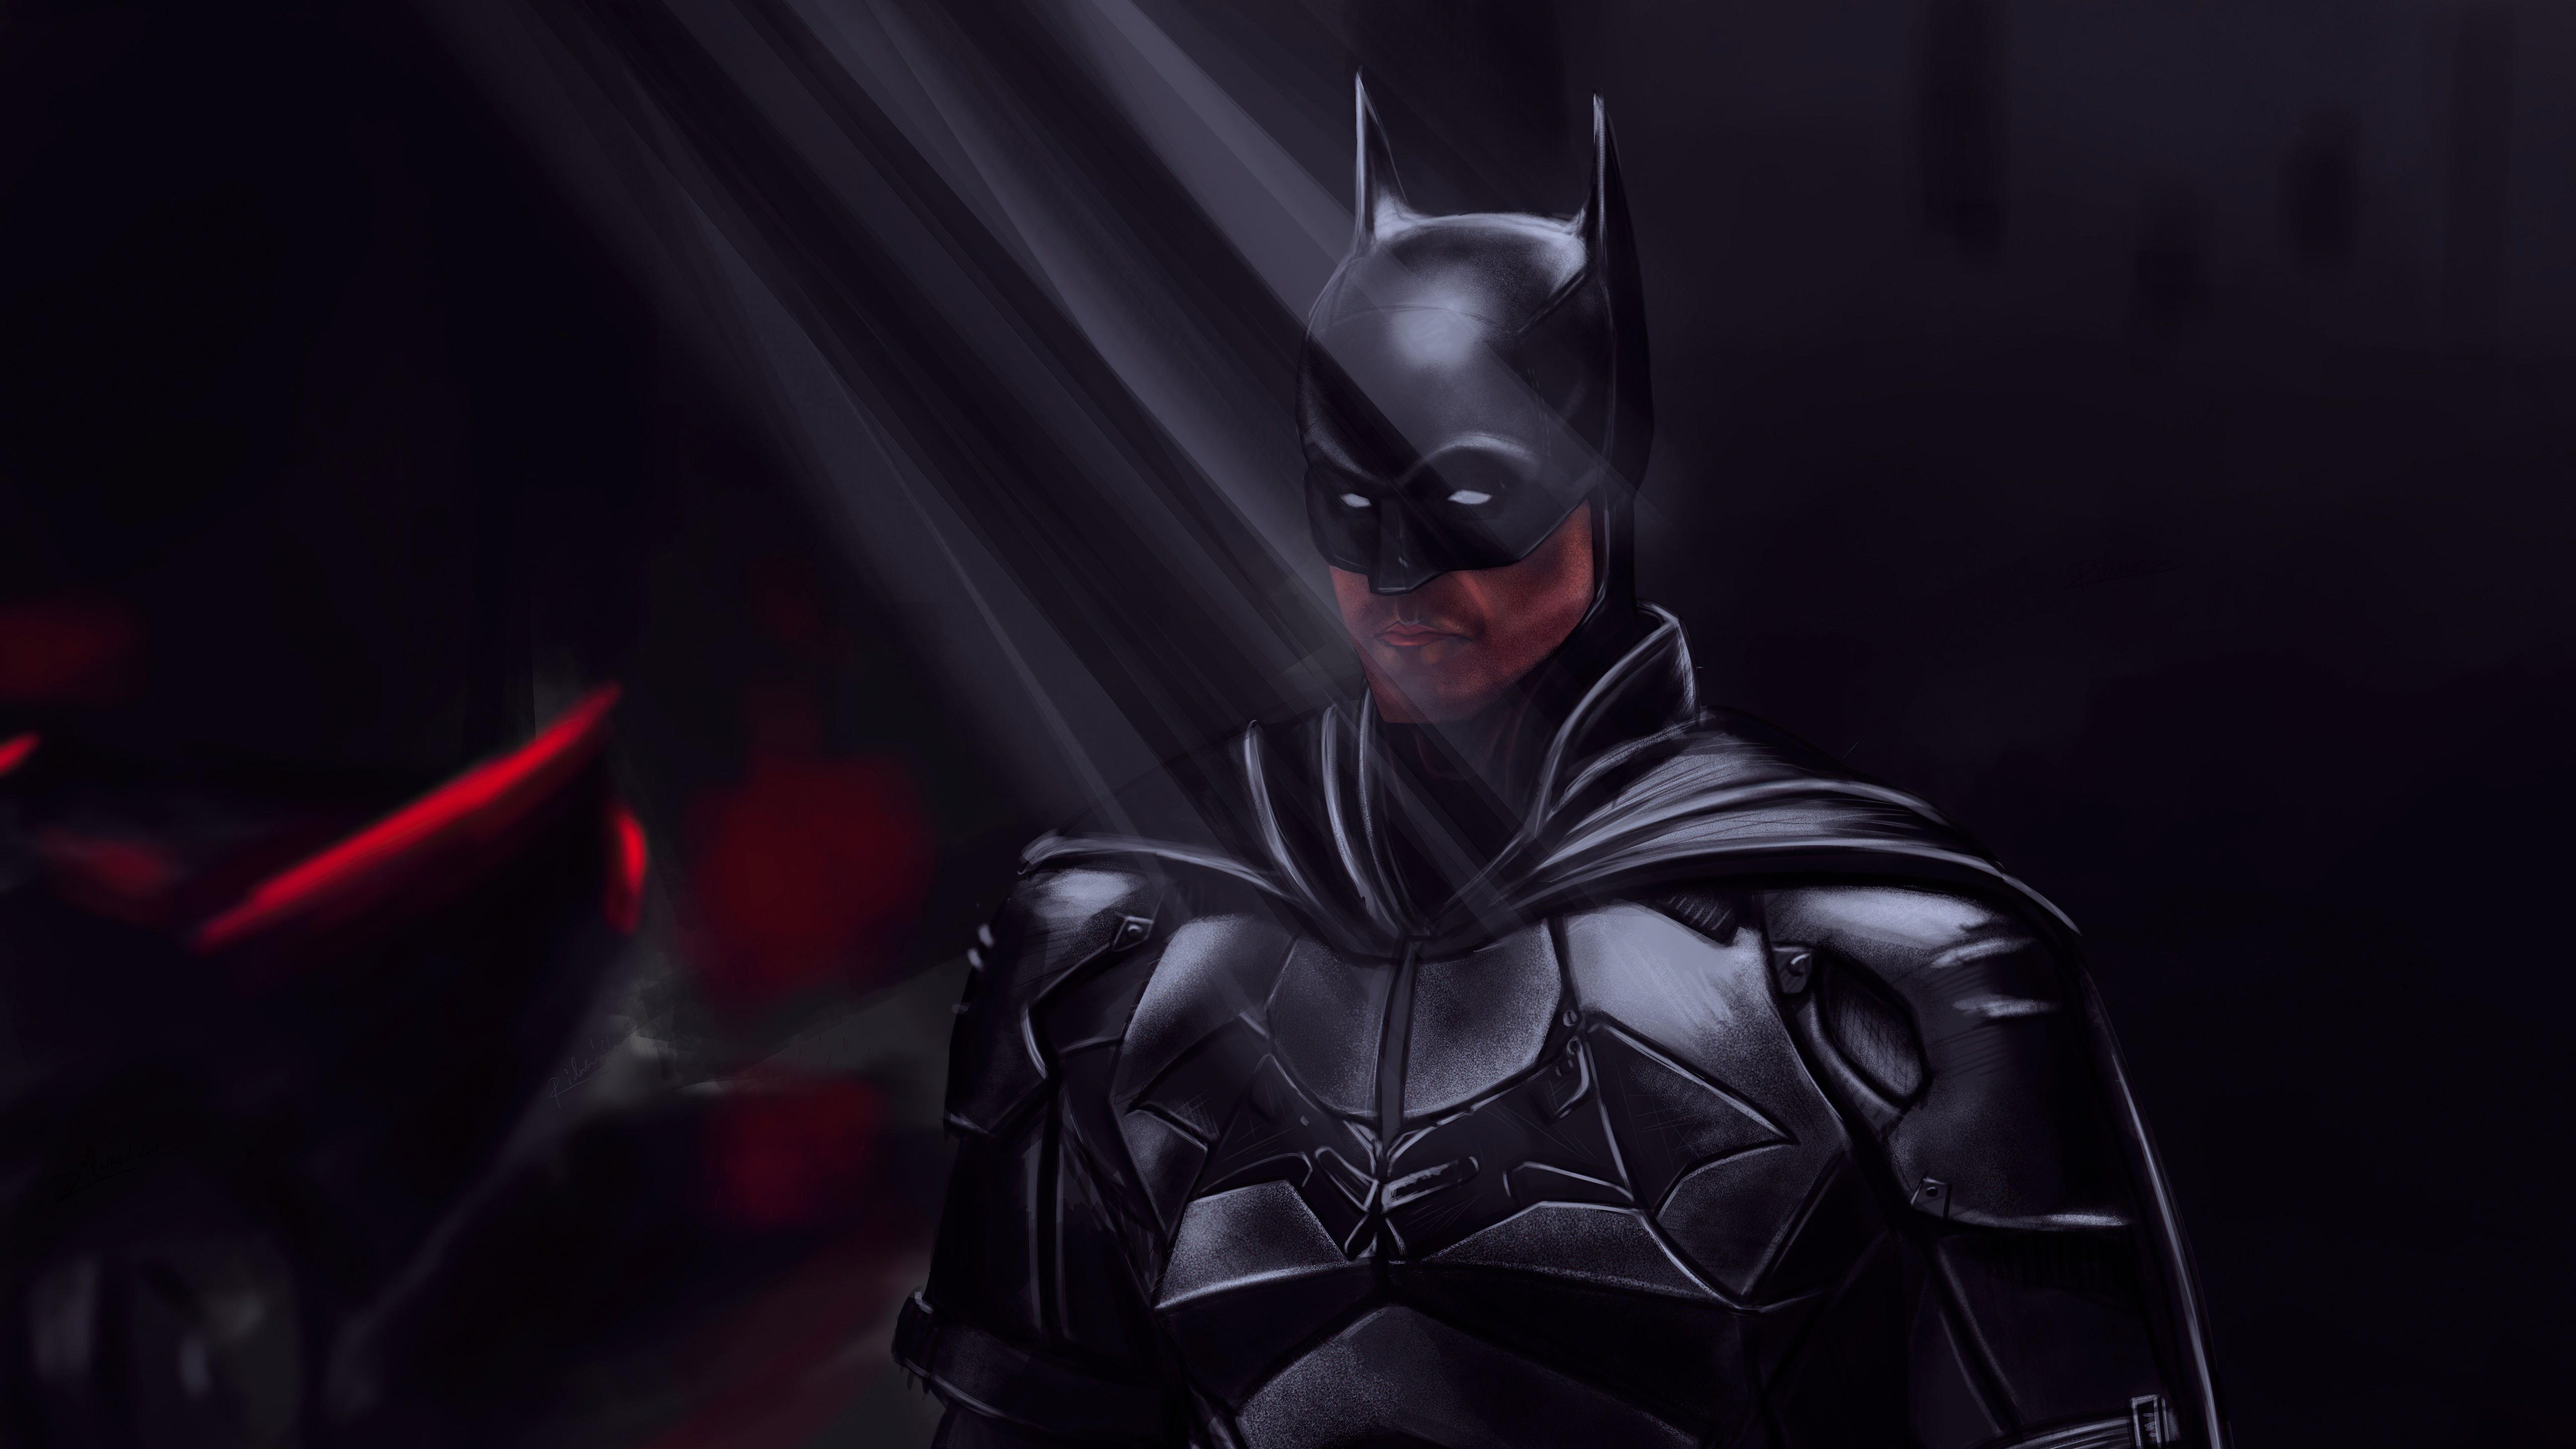 Batman in the dark Wallpaper 5k Ultra HD ID:8476